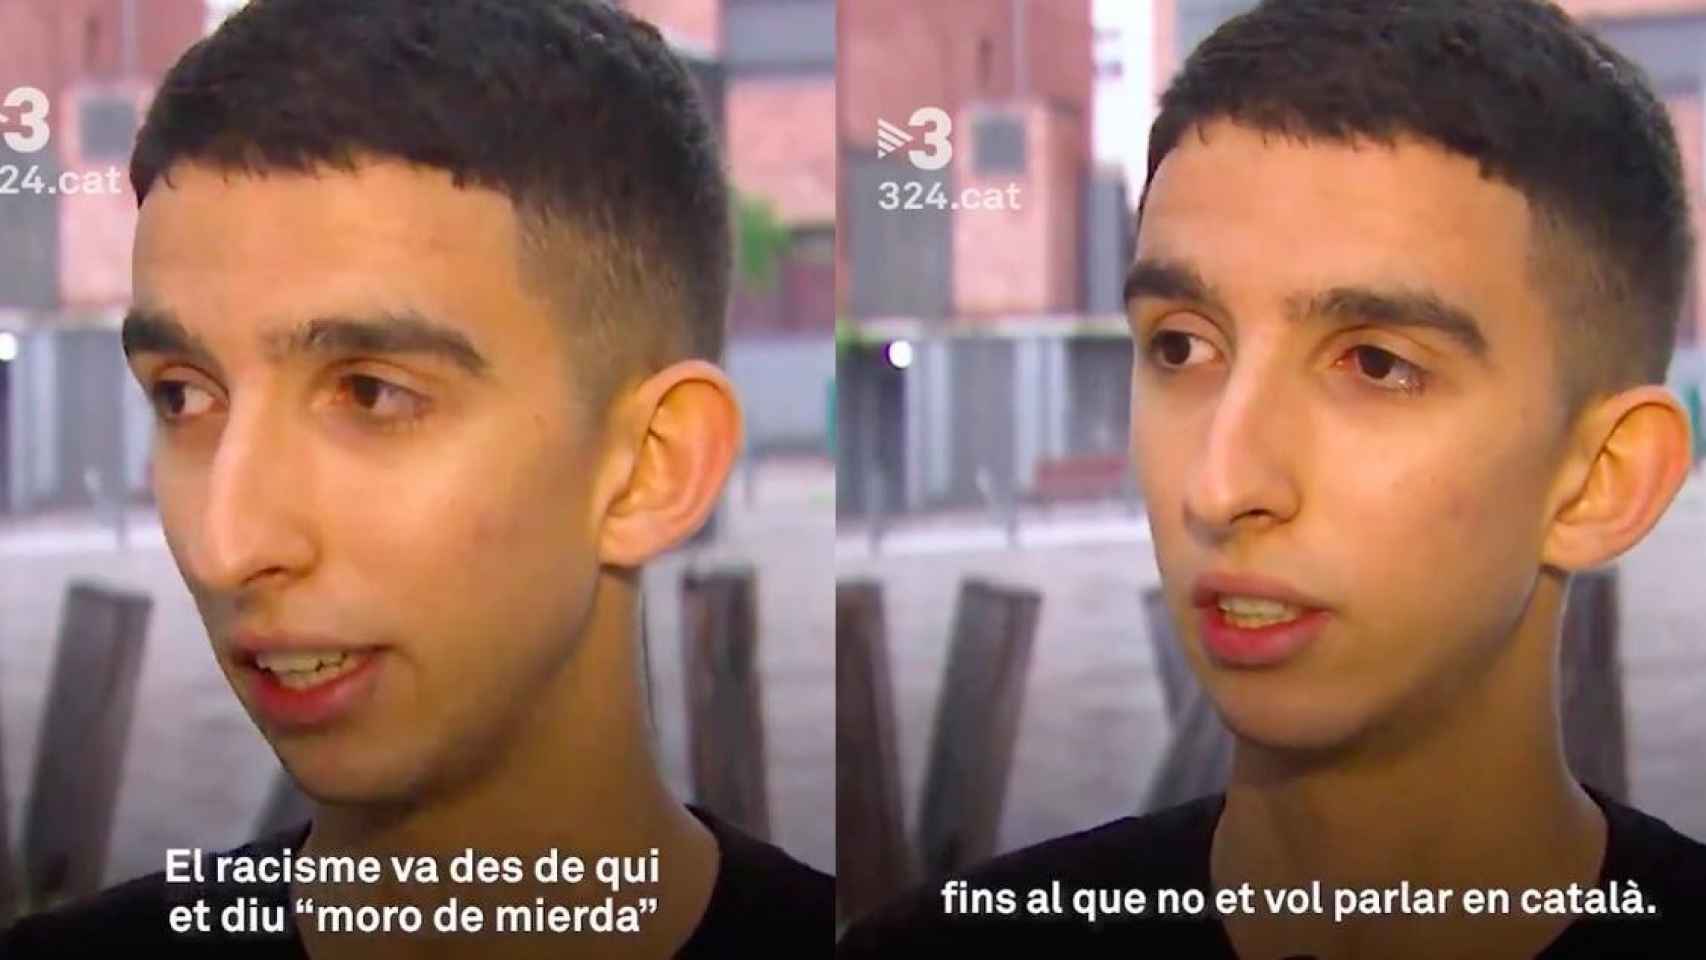 El racismo en Cataluña es hablar en castellano a quien parece extranjero, según TV3